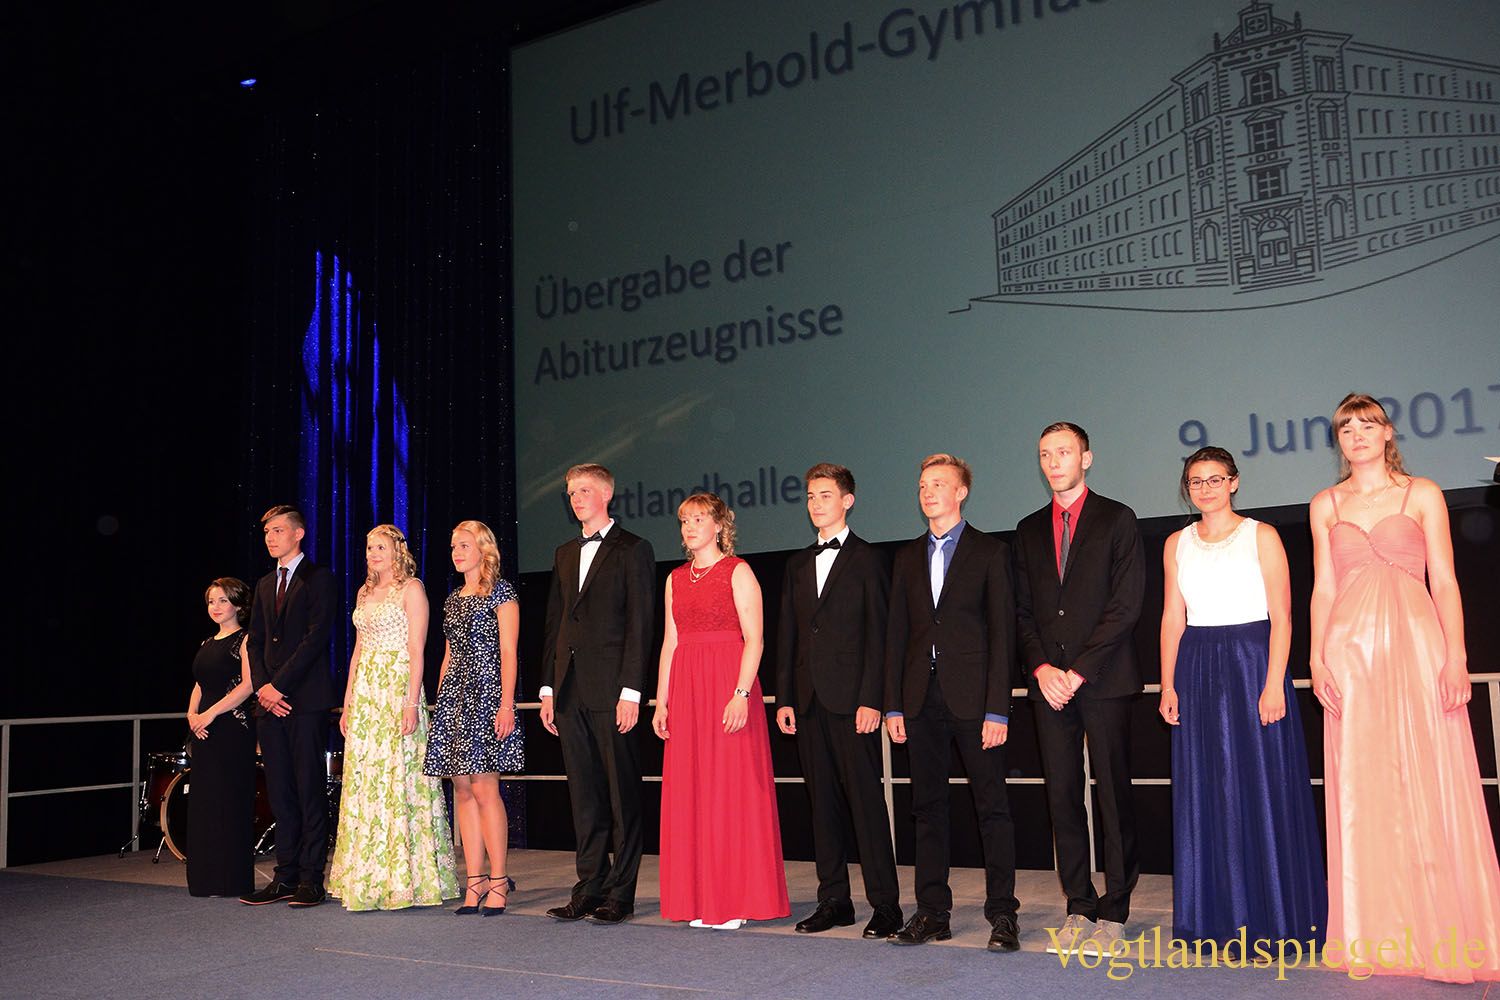 Ulf-Merbold-Gymnasium: 69 Schüler erhalten Abiturzeugnis